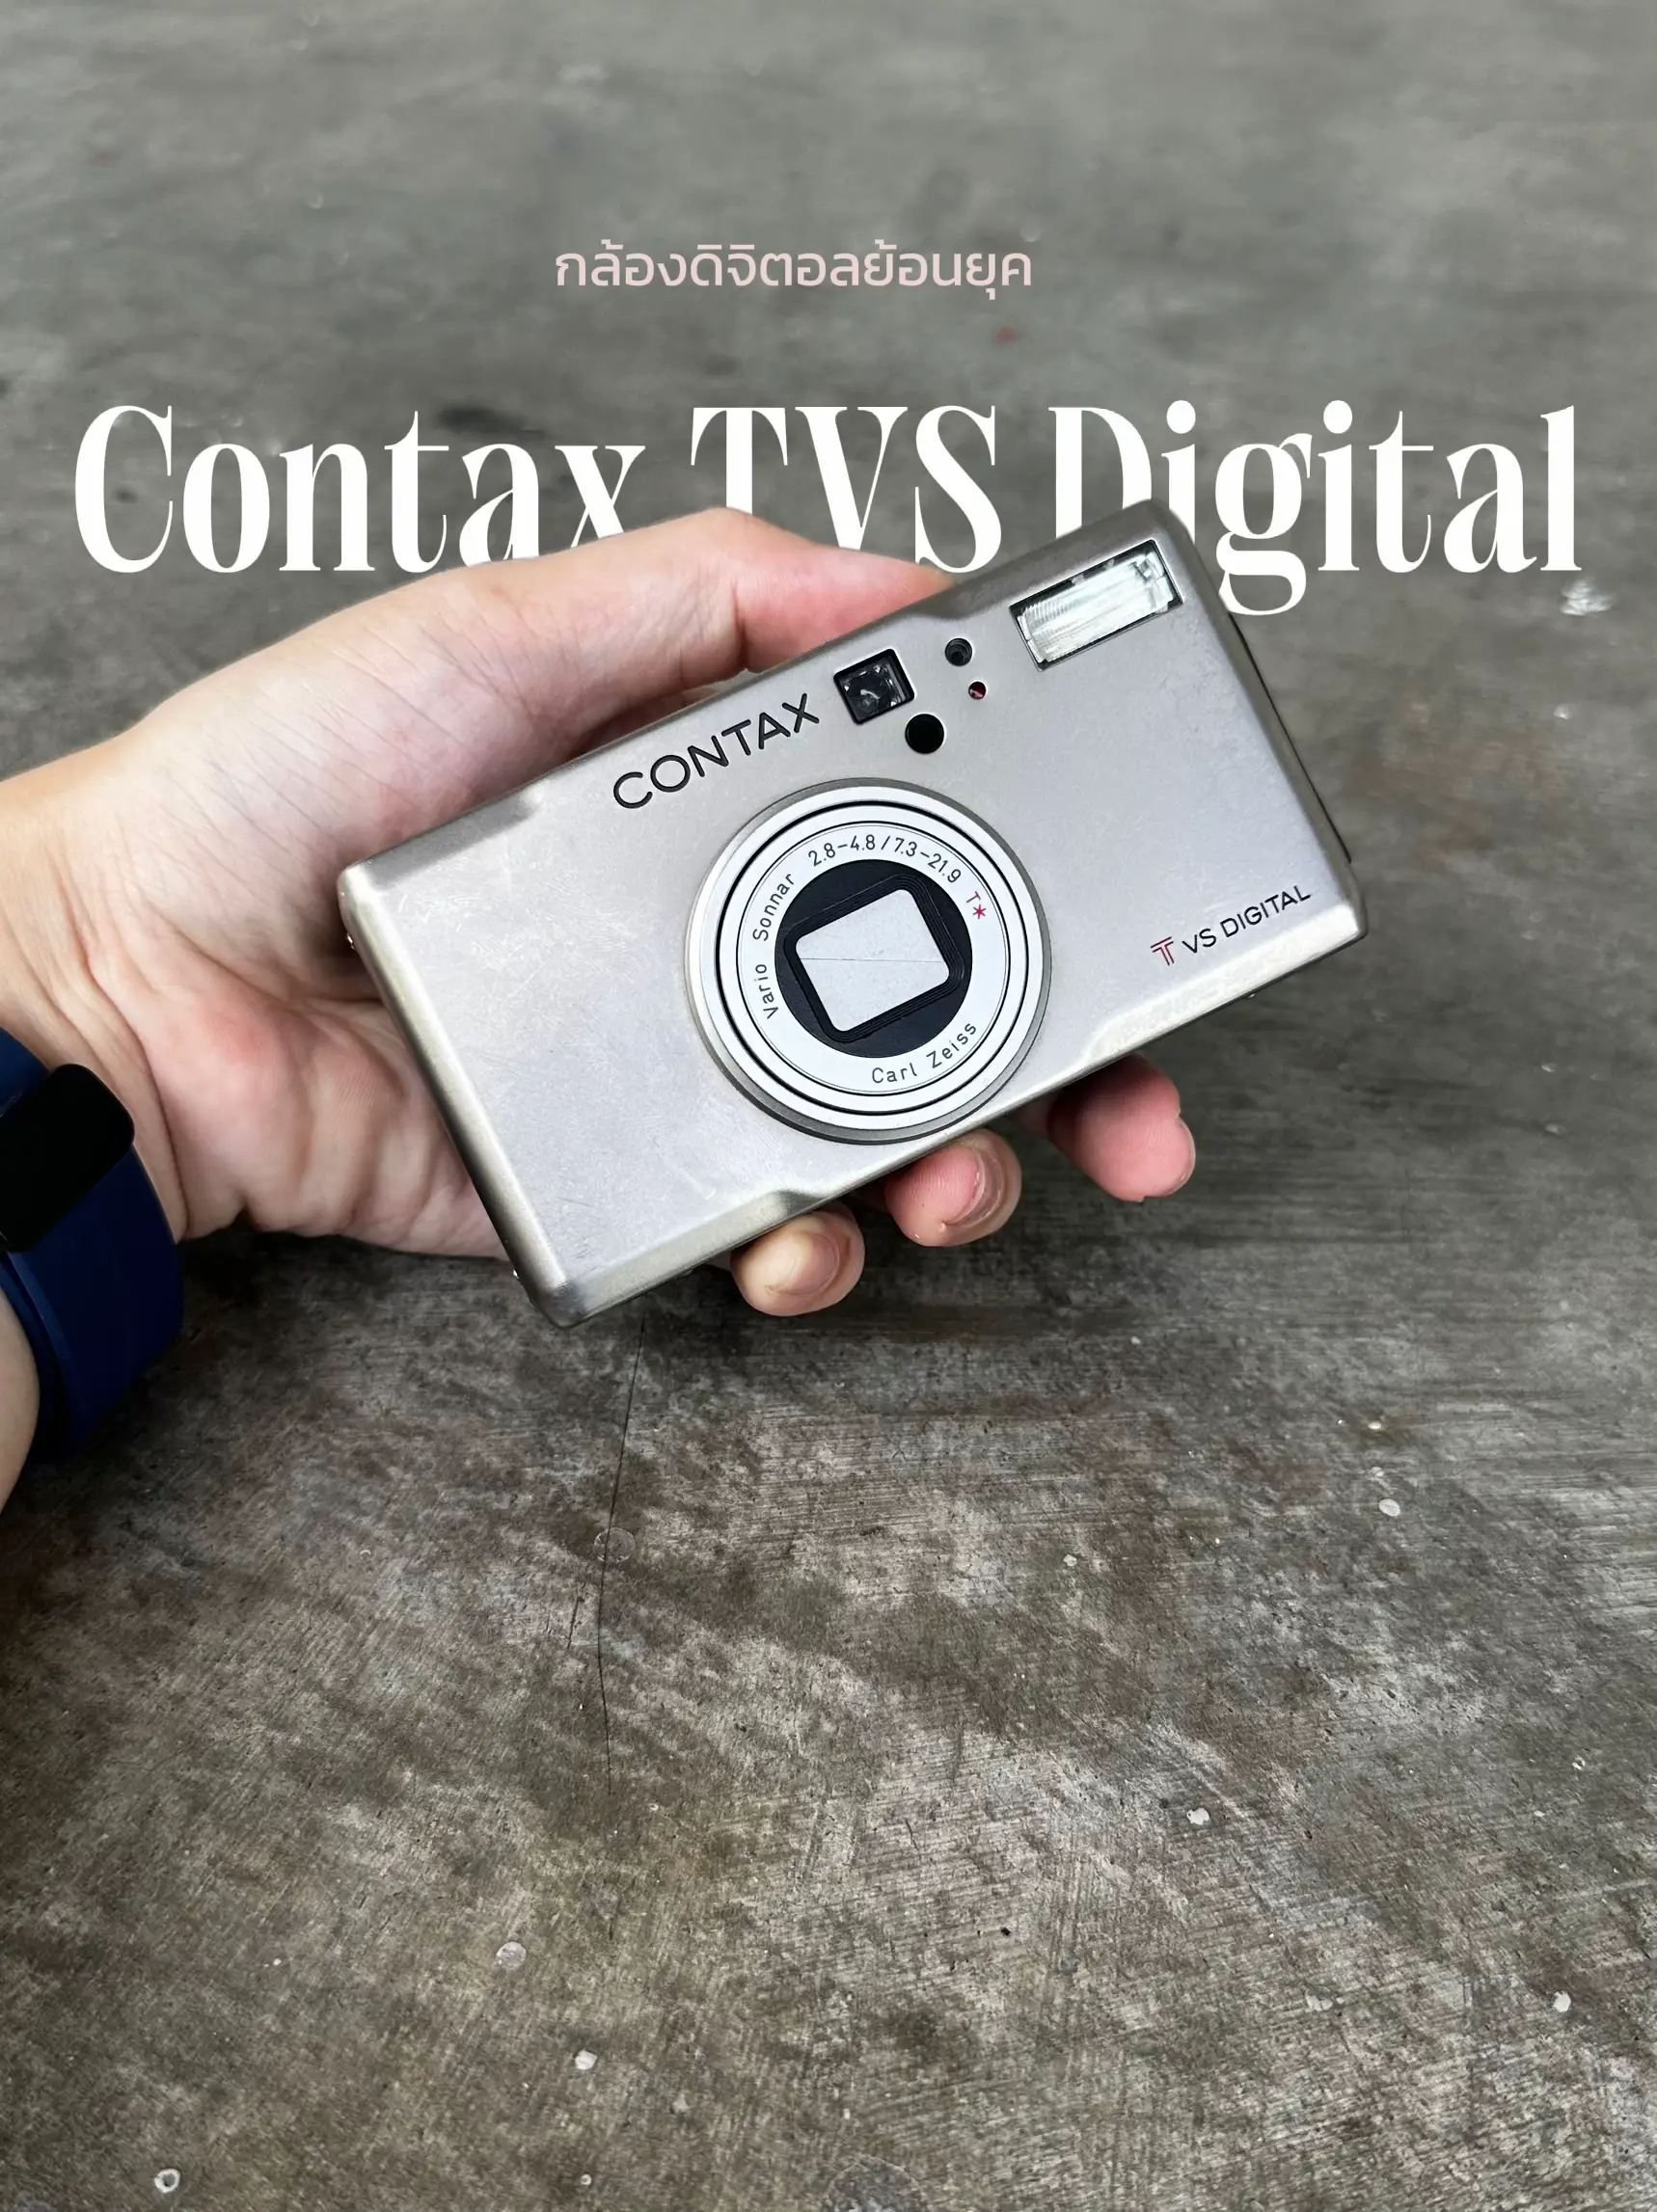 Contax tvs digital - デジタルカメラ